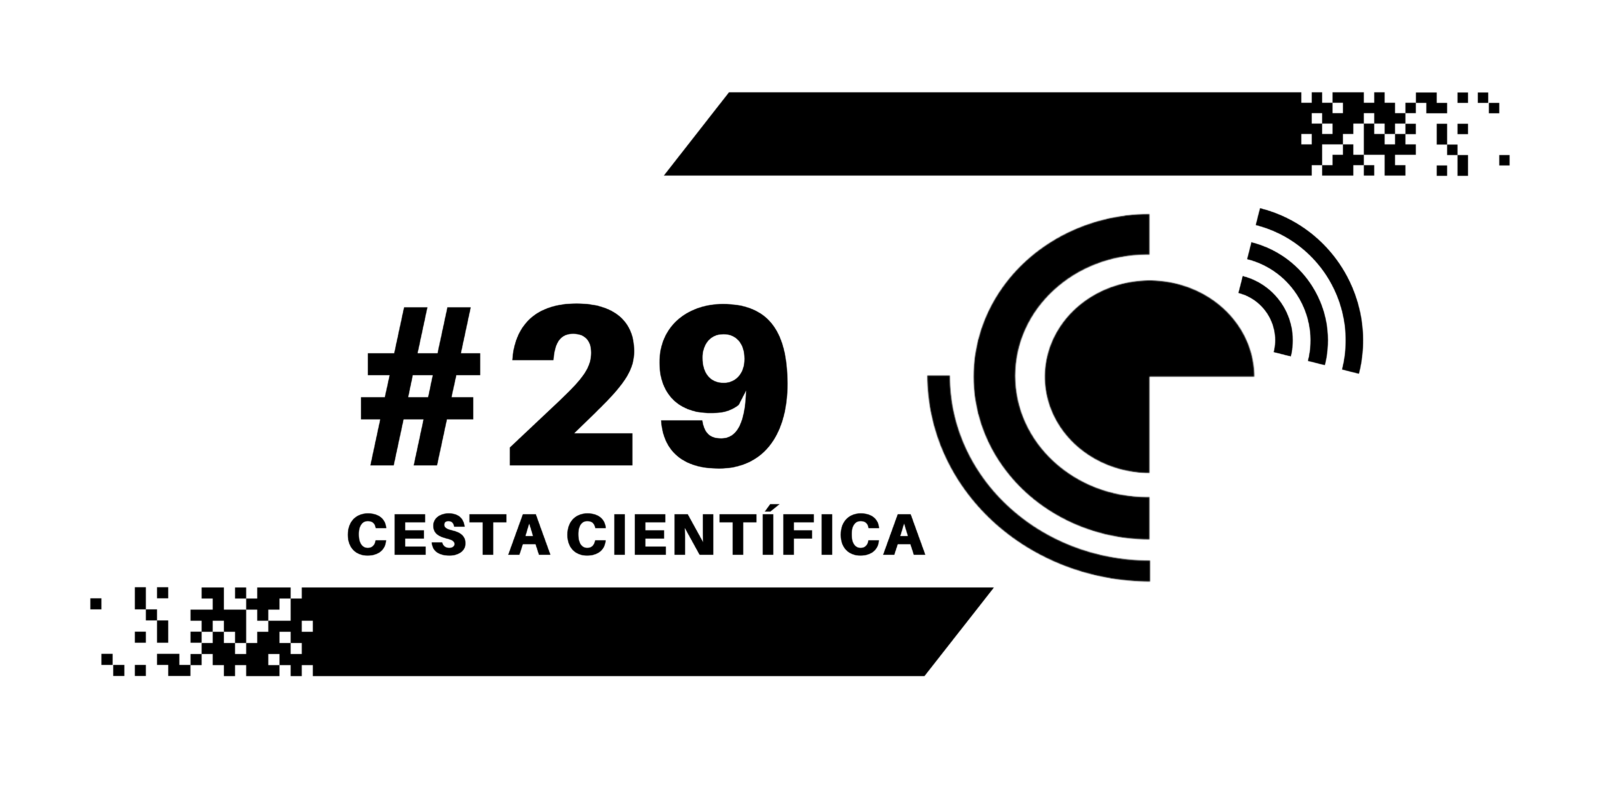 Cesta científica #29: a crise nas licenciaturas brasileiras, ilustrações gratuitas de cientistas, colonialismo científico e muito mais